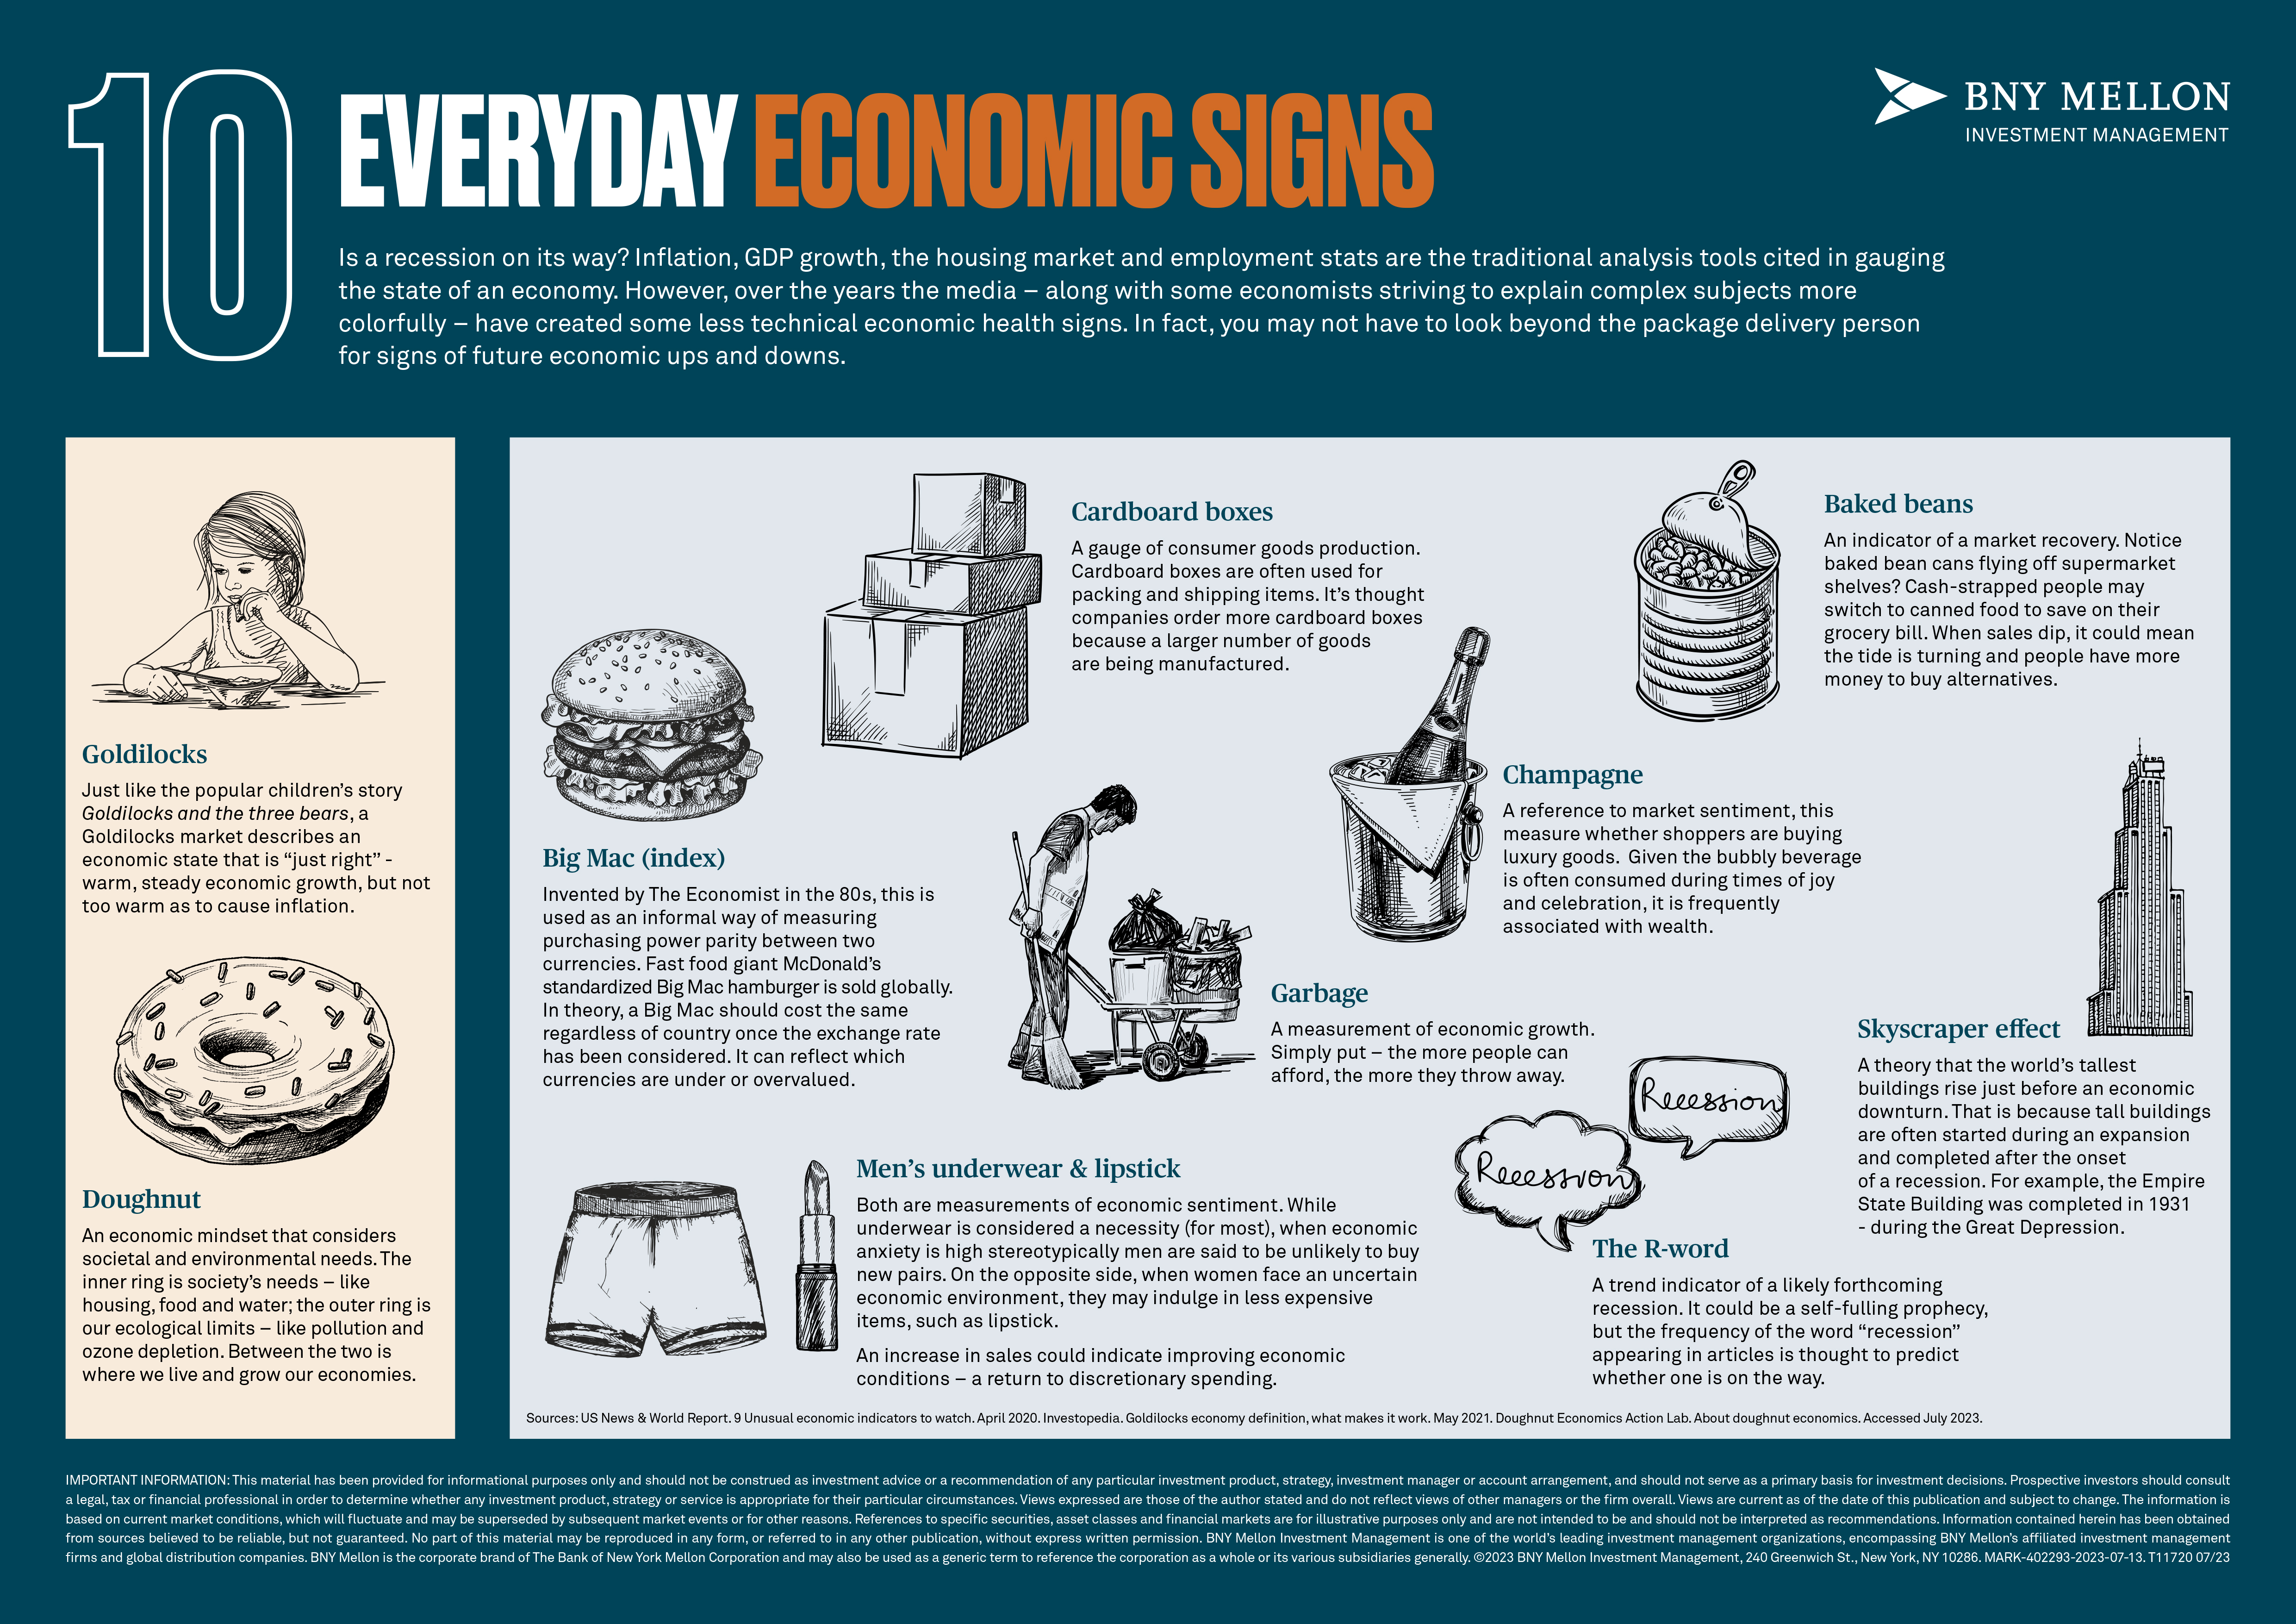 Infographic of everyday economic indicators